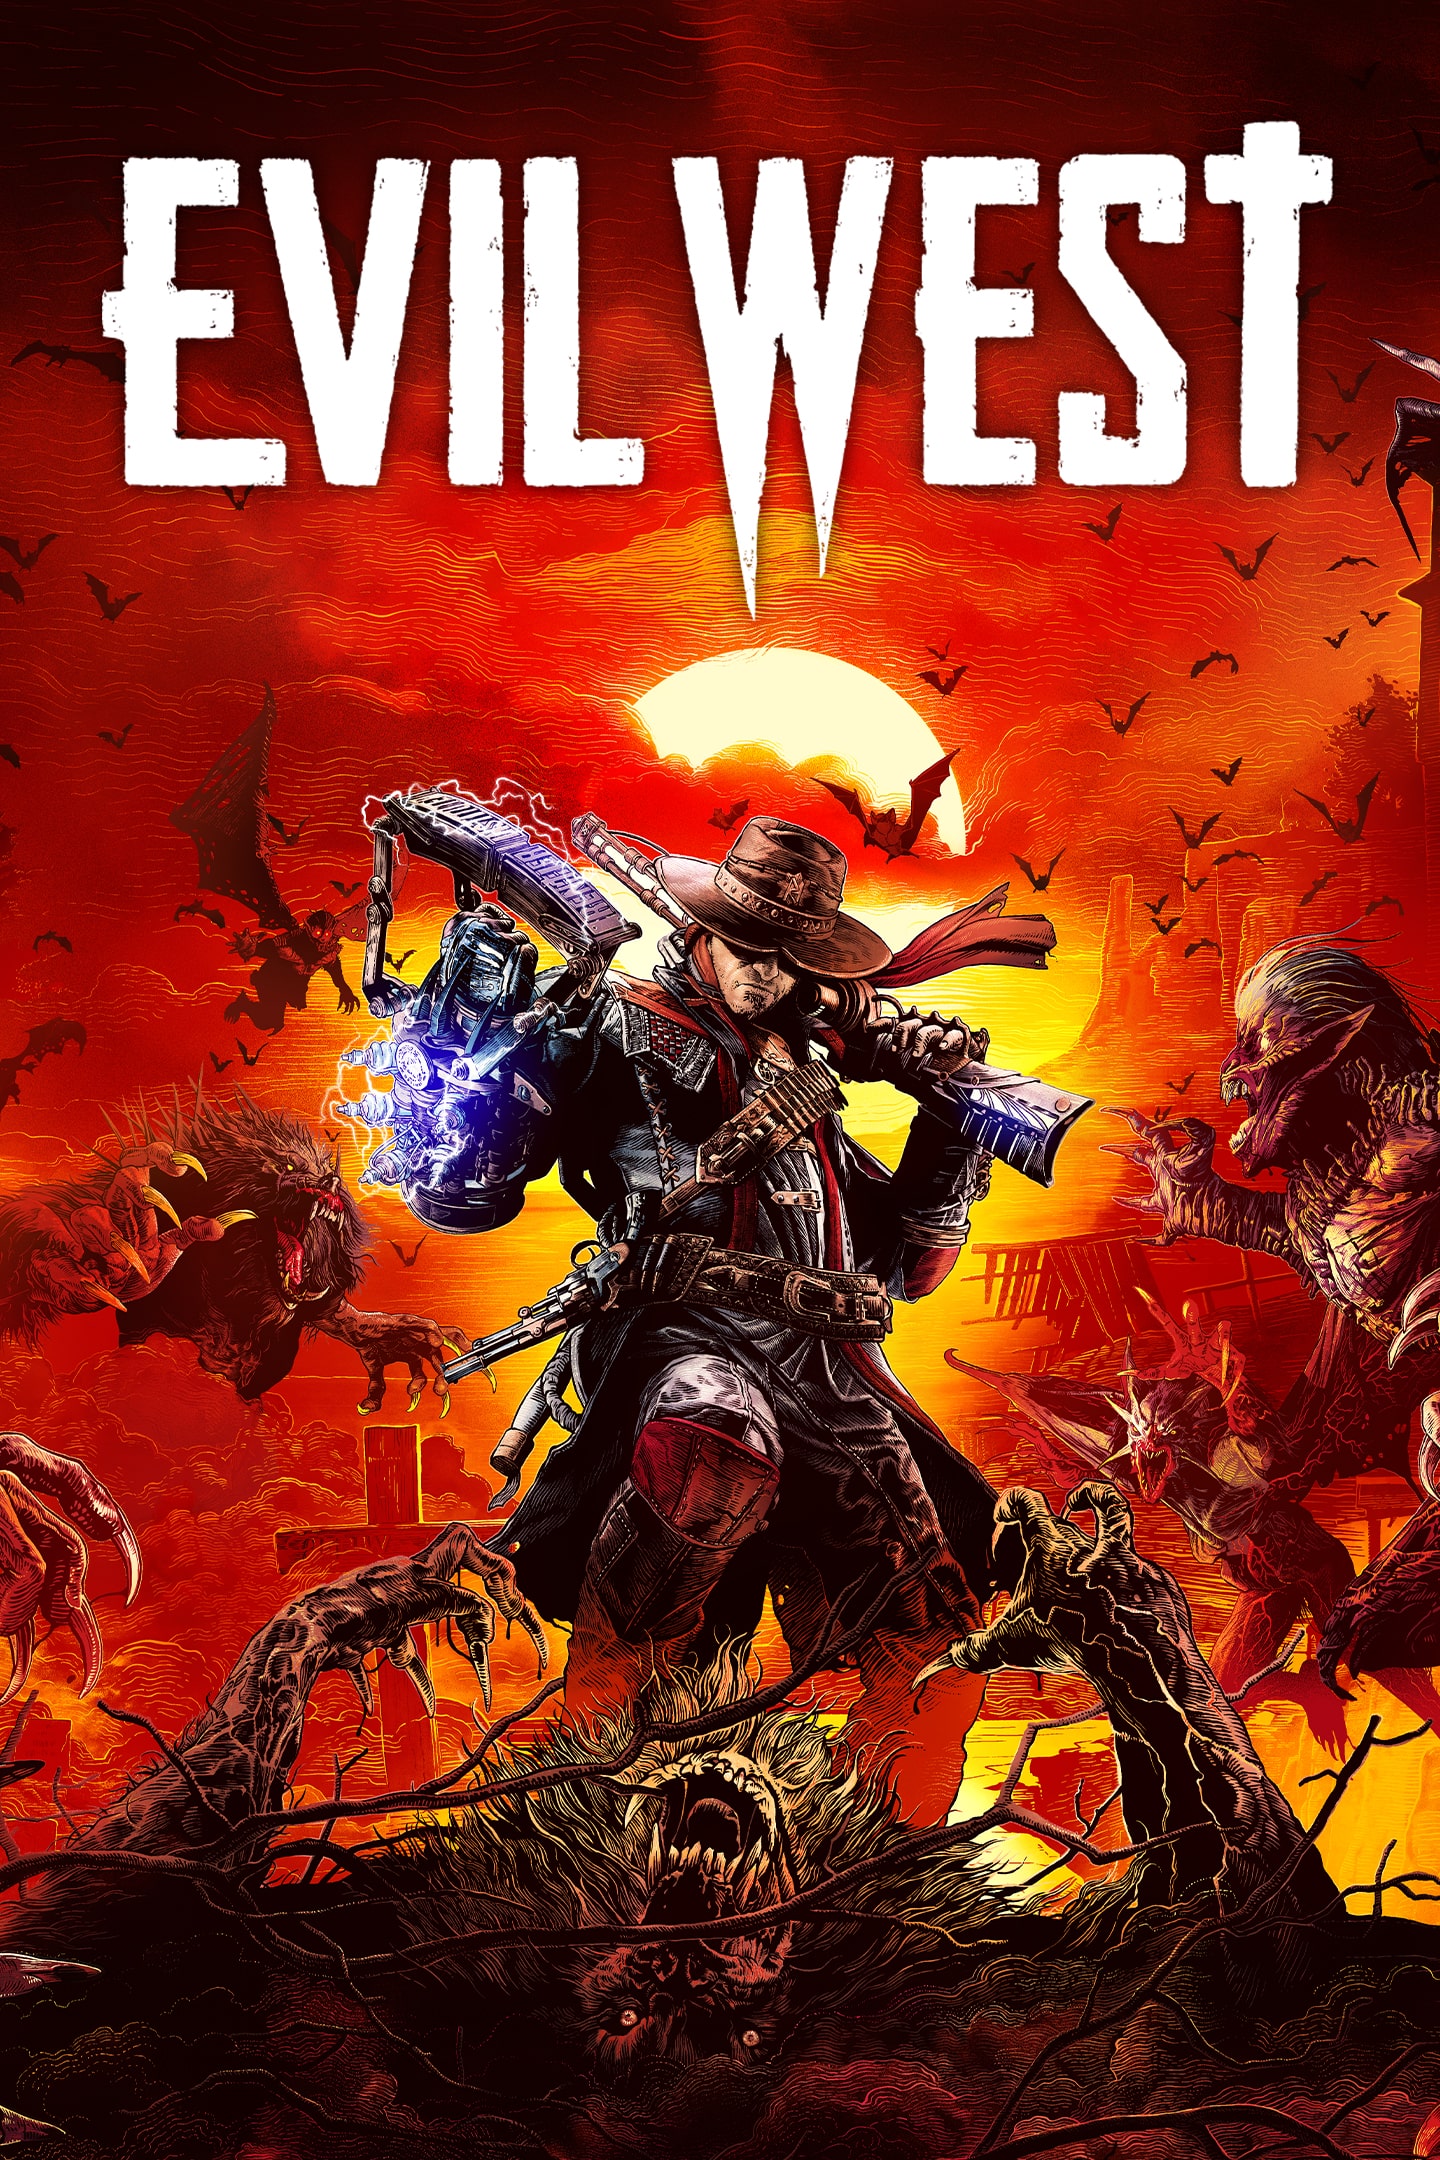 Foi revelado a duração da campanha principal de Evil West